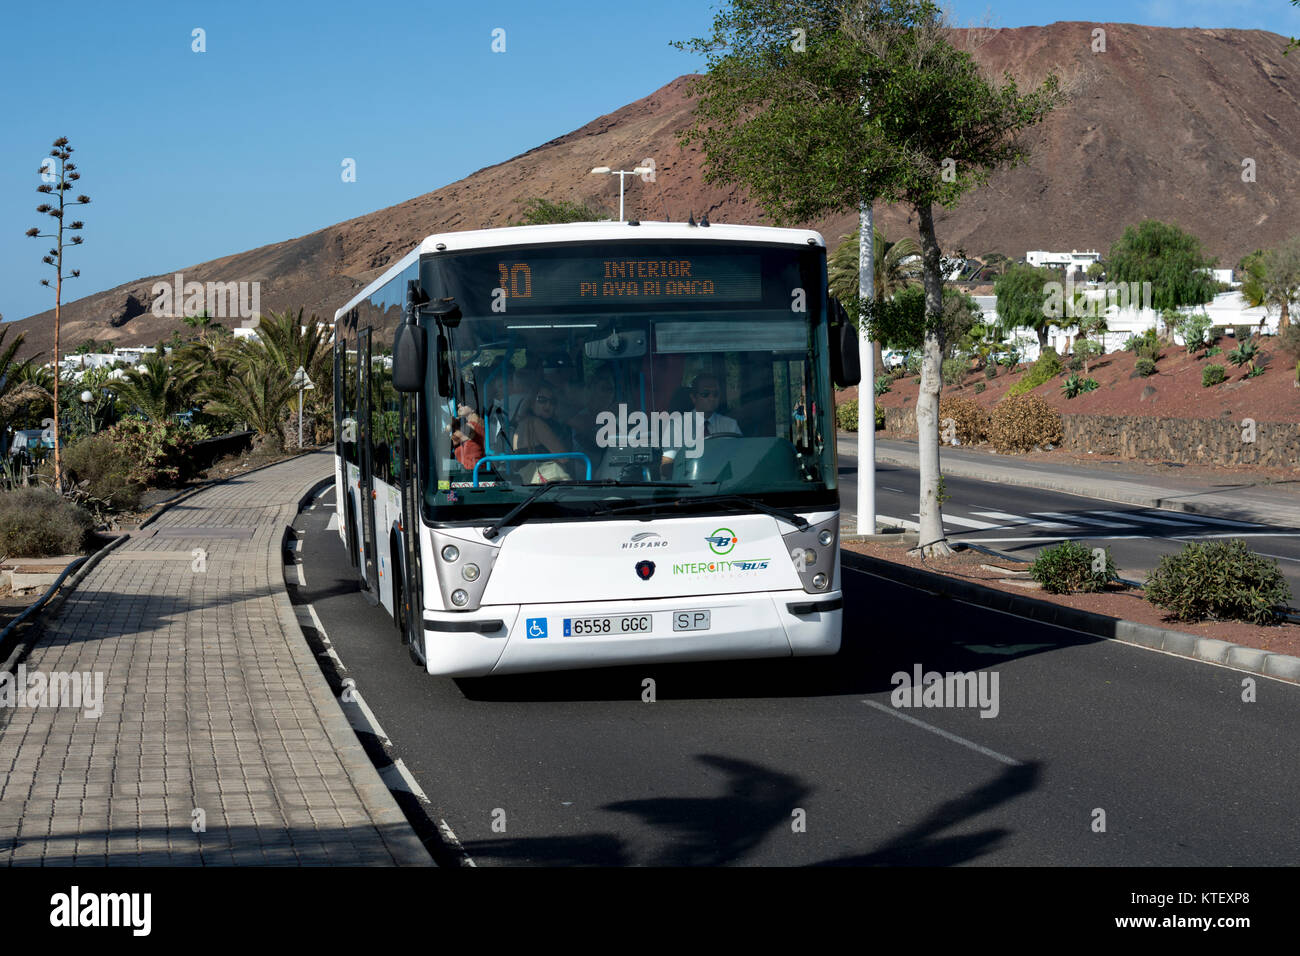 Local bus near Playa Blanca, Lanzarote, Spain Stock Photo - Alamy